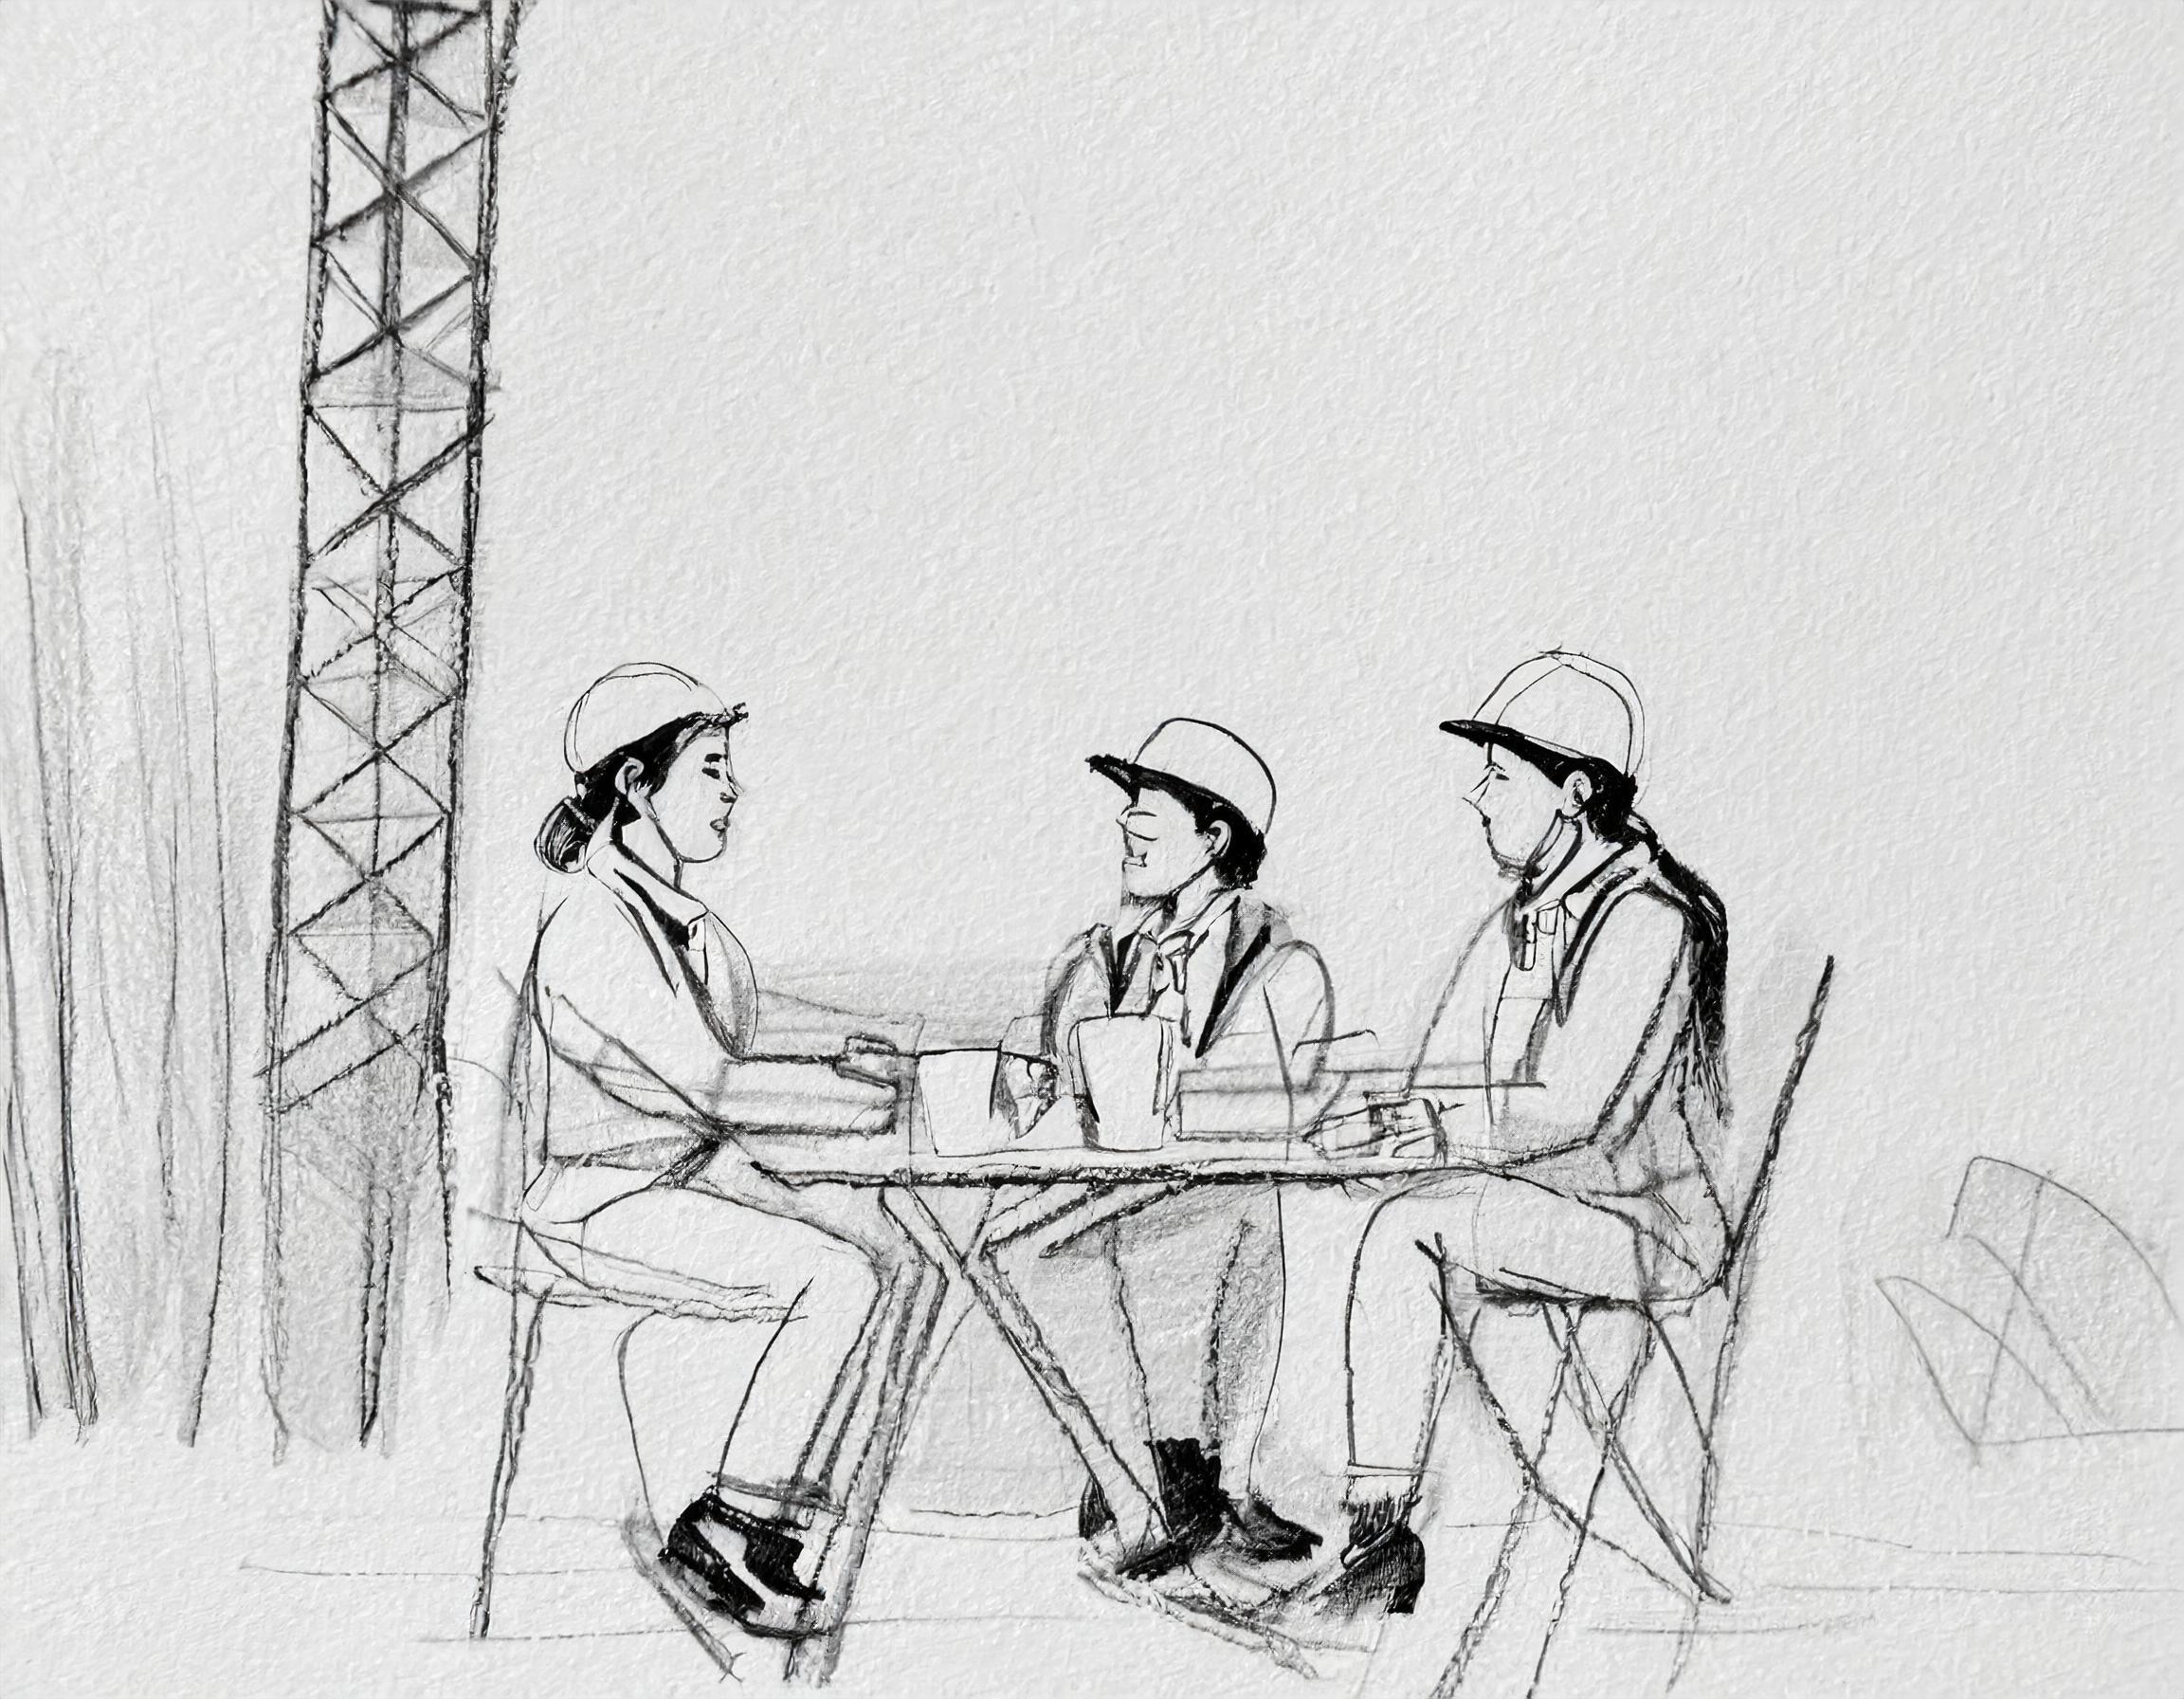 Firefly-generert: En gruppe byggingsarbeidere sitter og har lunsj